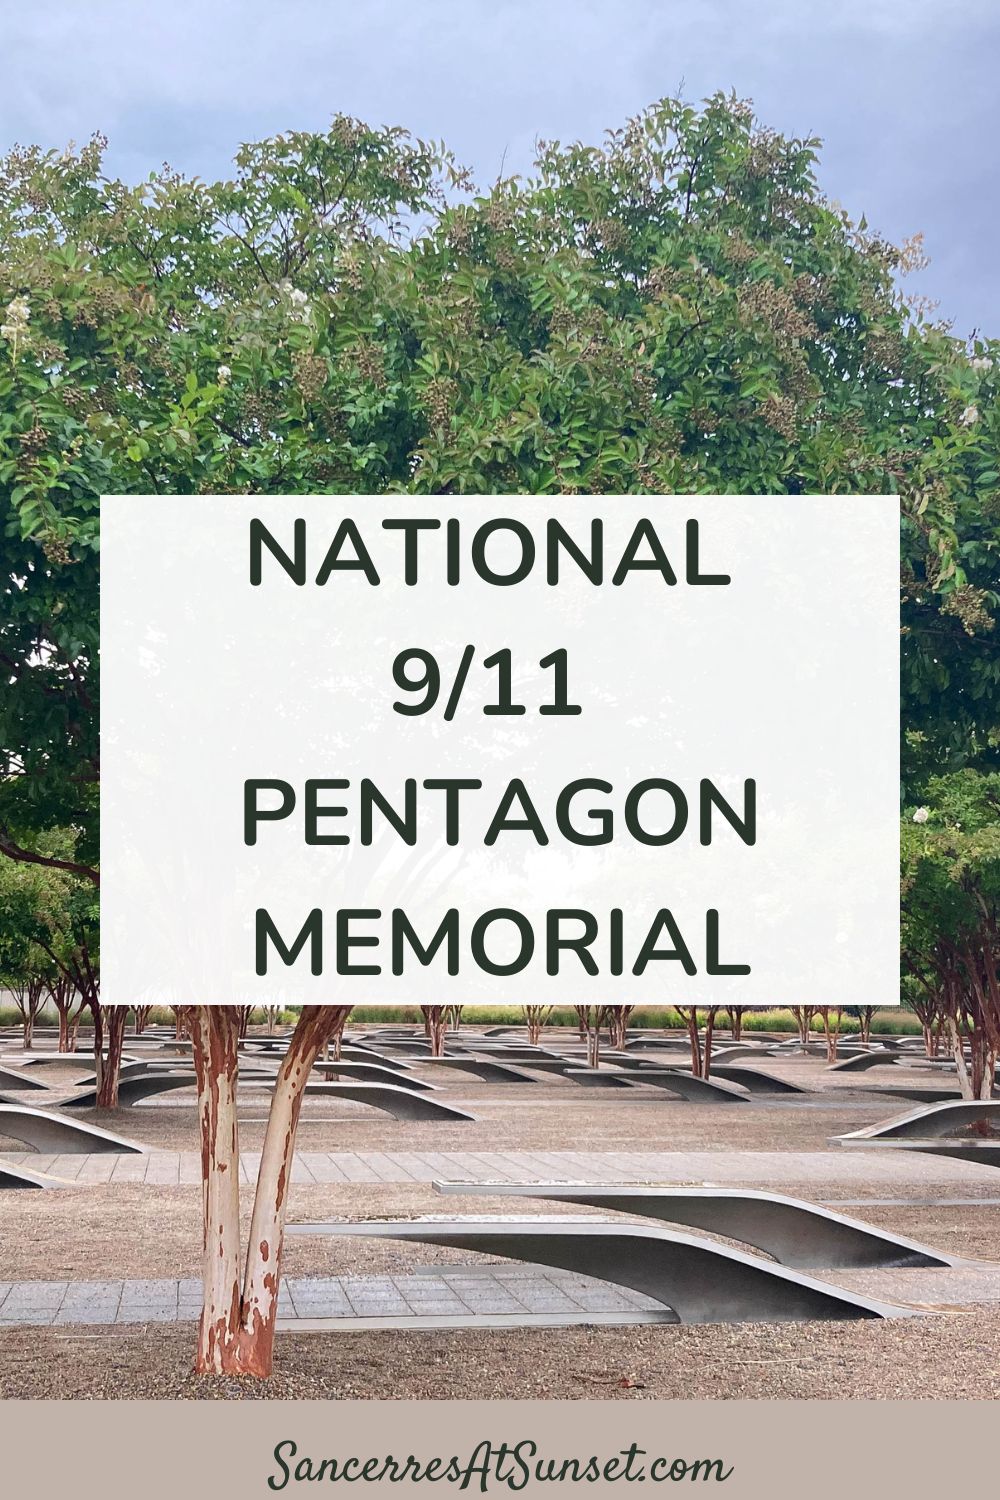 National 9/11 Pentagon Memorial in Arlington, Virginia